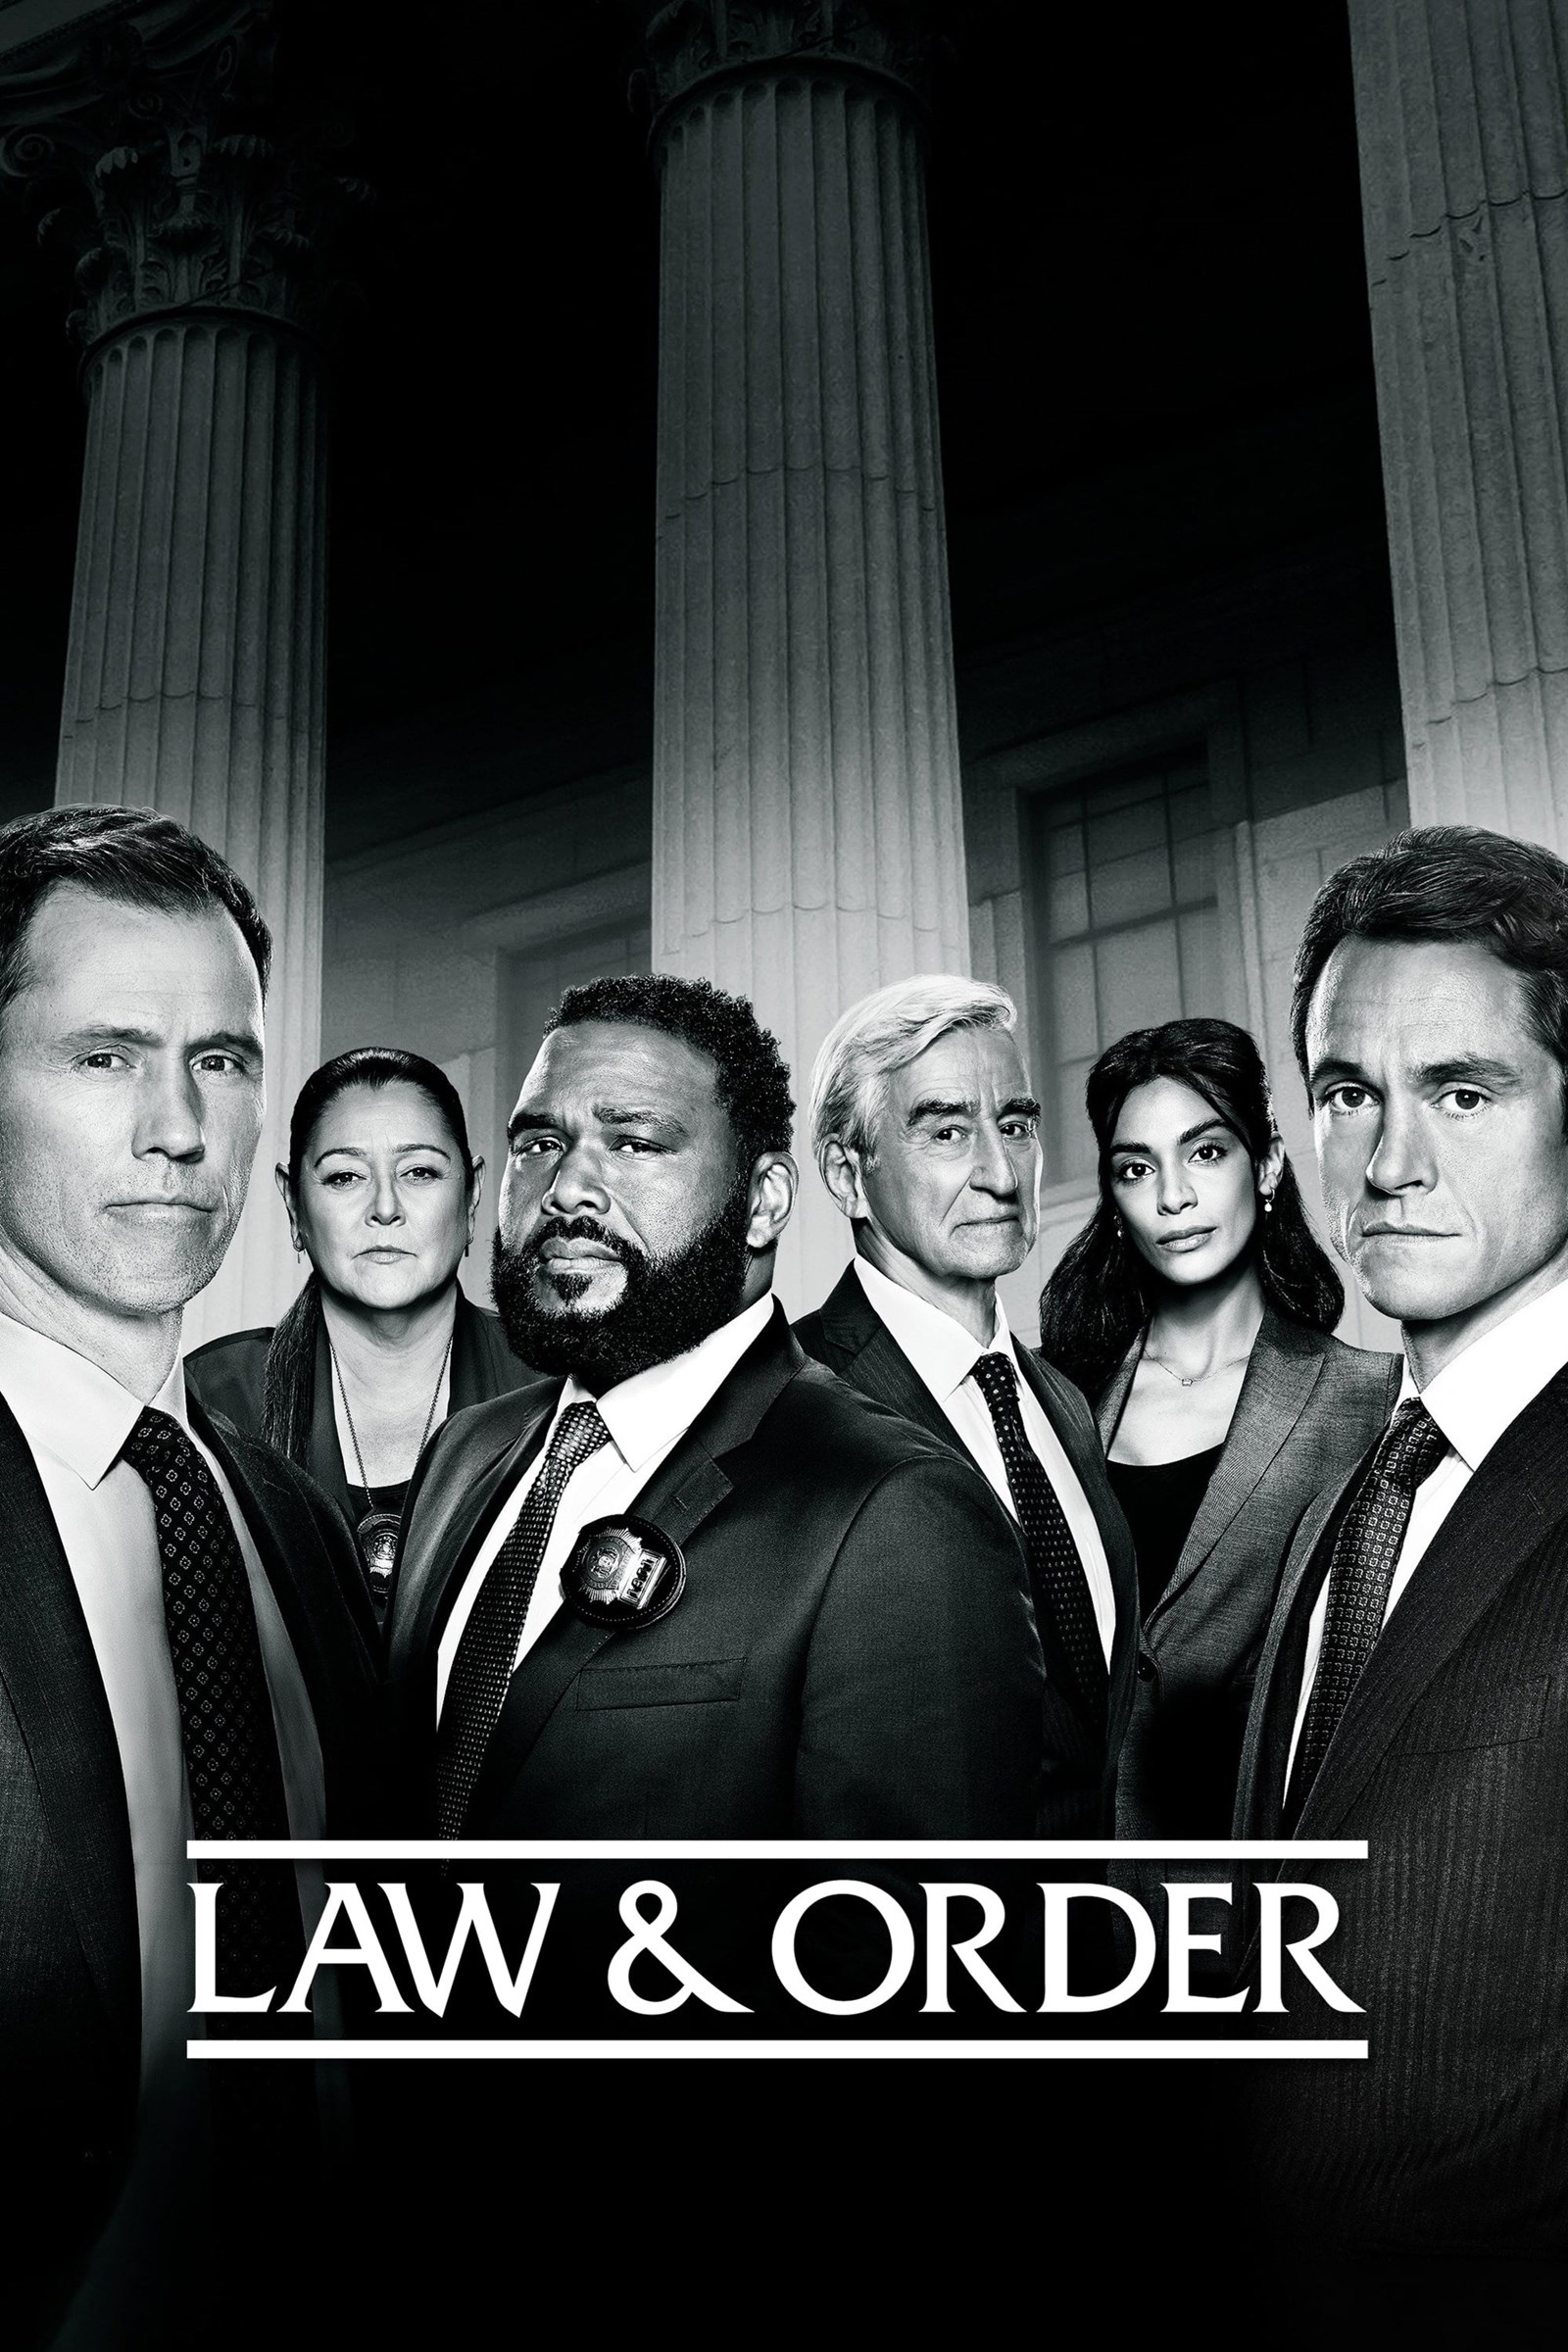 مشاهدة مسلسل Law & Order الموسم 21 الحادي والعشرون الحلقة 7 السابعة مترجمة